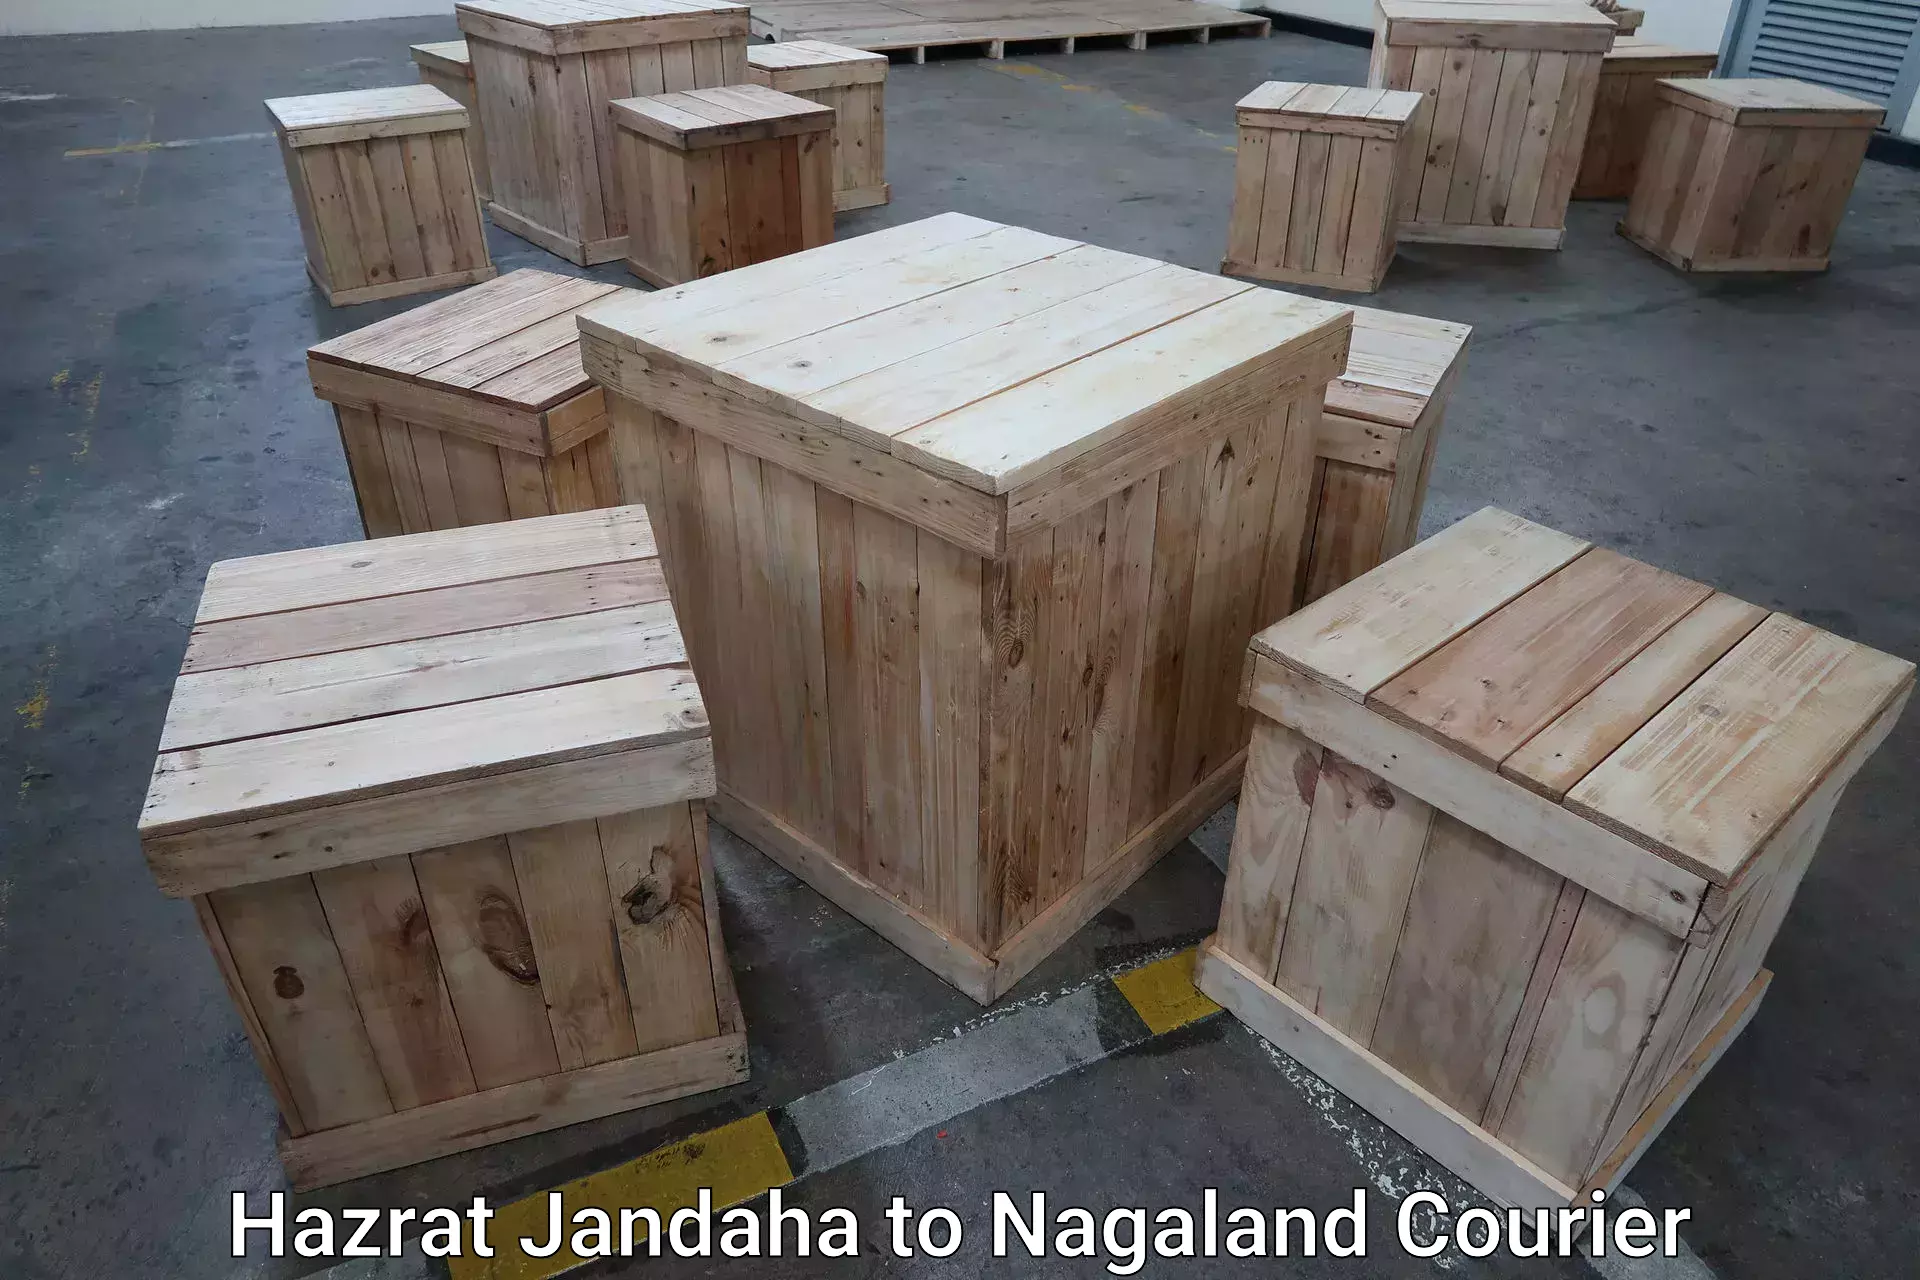 Automated luggage transport in Hazrat Jandaha to Nagaland